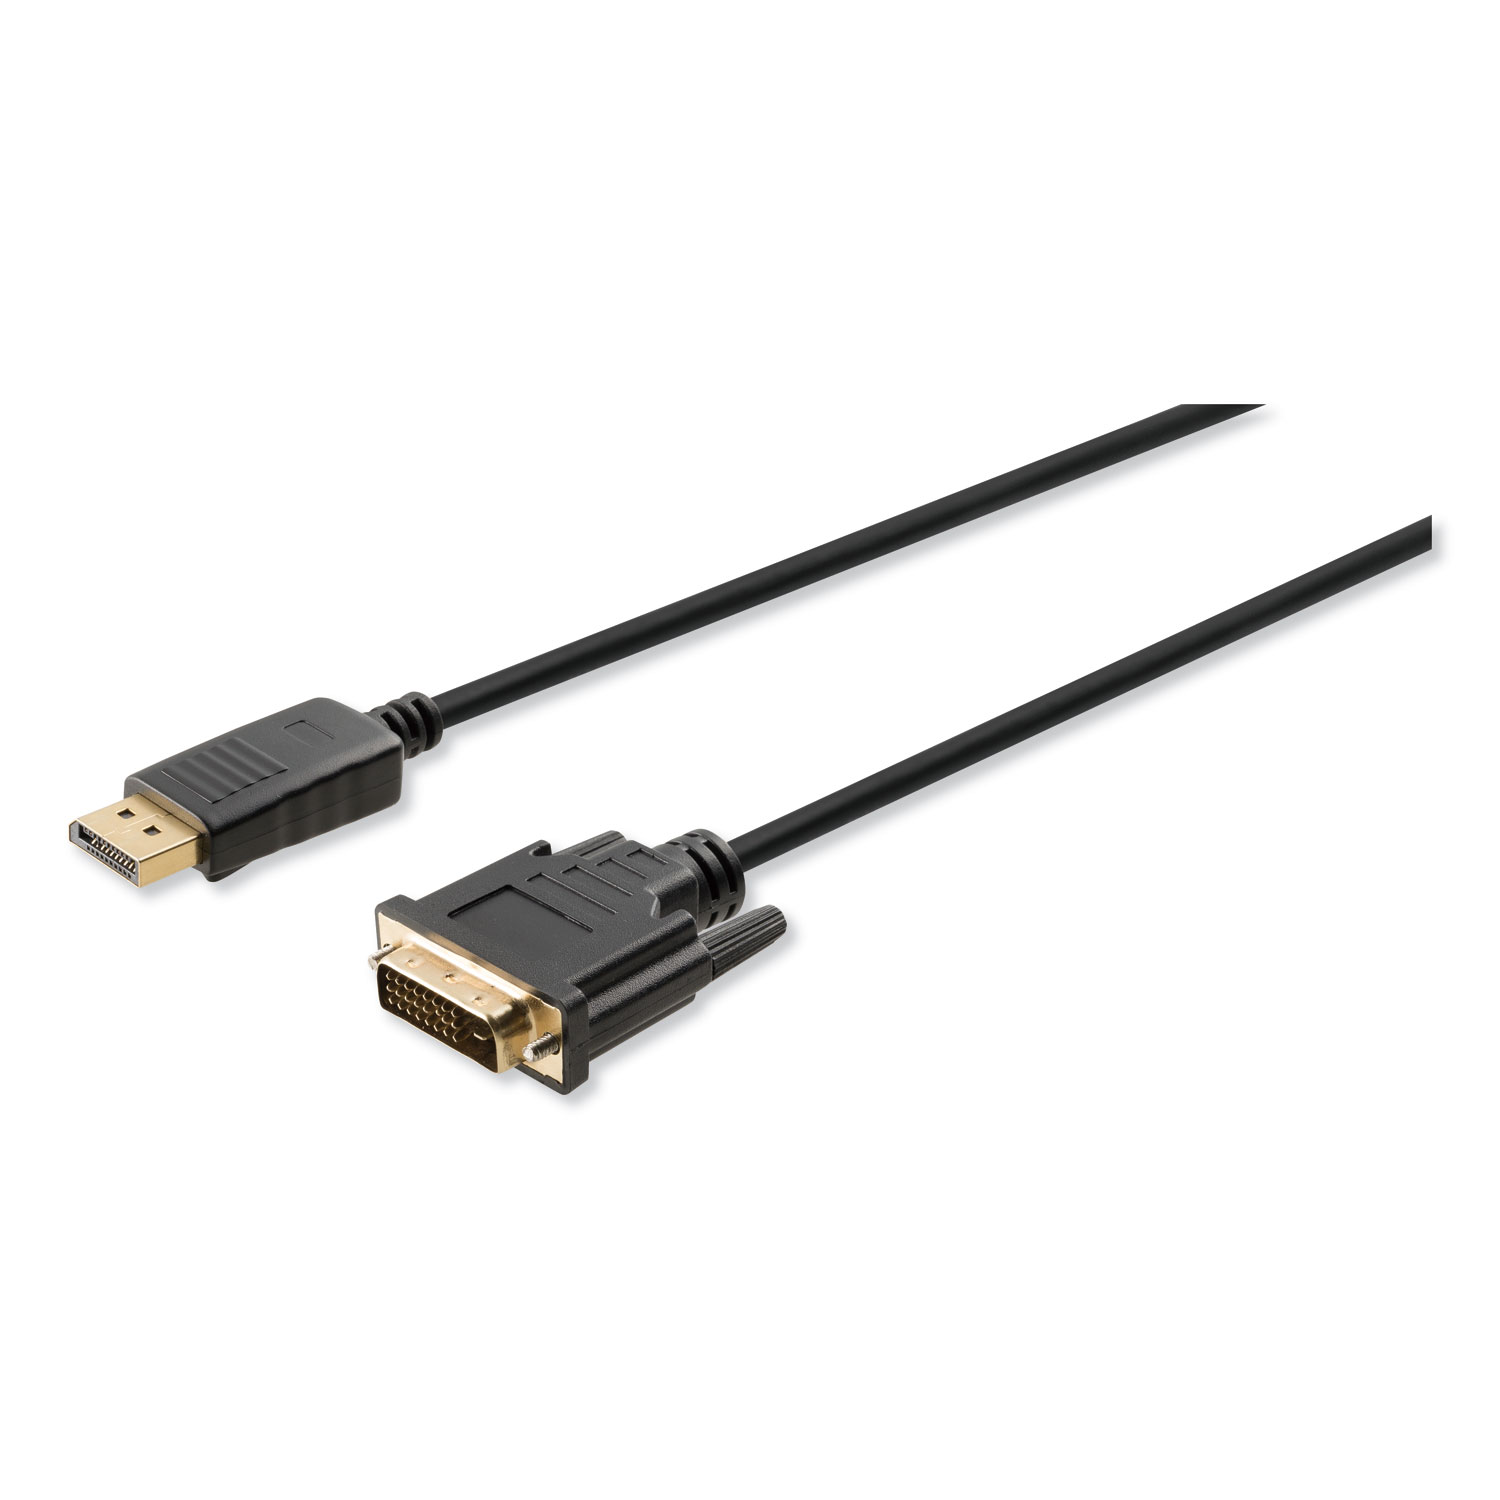  Innovera IVR30040 HDMI to SVGA Adapter, 6, Black (IVR30040) 